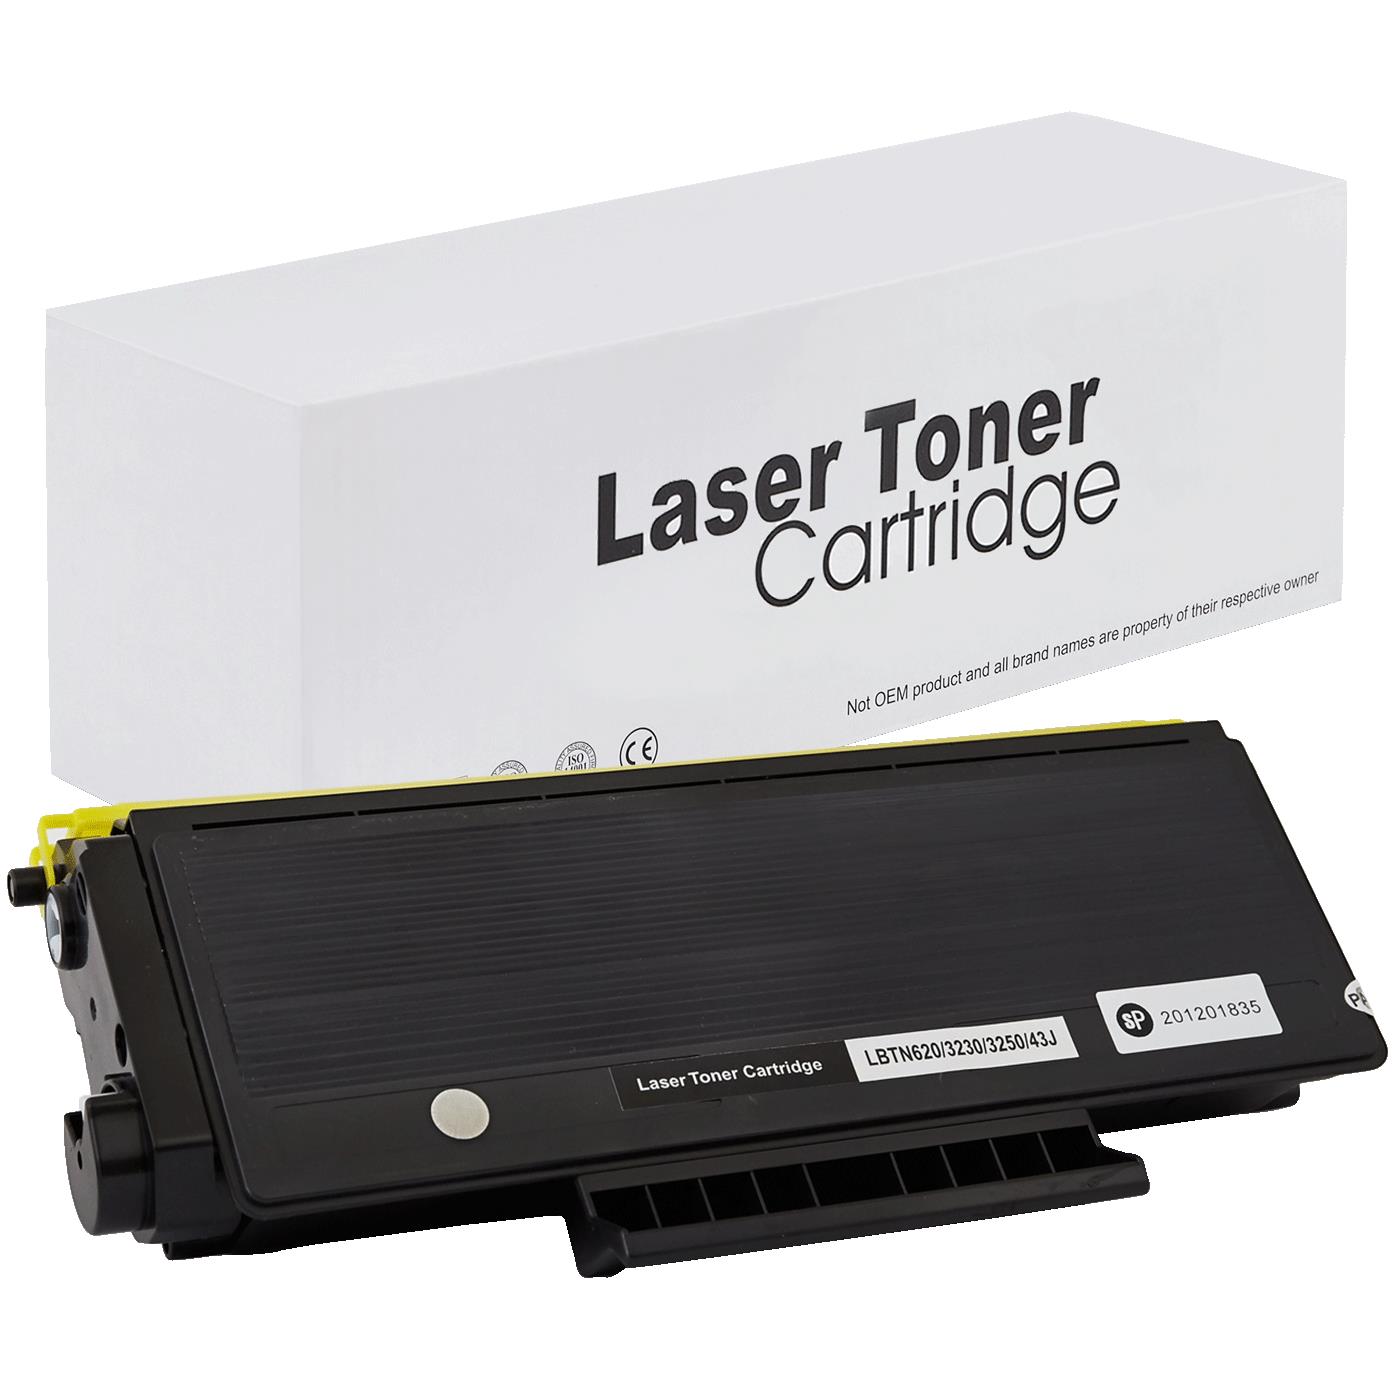 съвместима тонер касета за принтери и печатащи устройства на Brother HL 5340D Toner BR-3230 | TN3230. Ниски цени, прецизно изпълнение, високо качество.